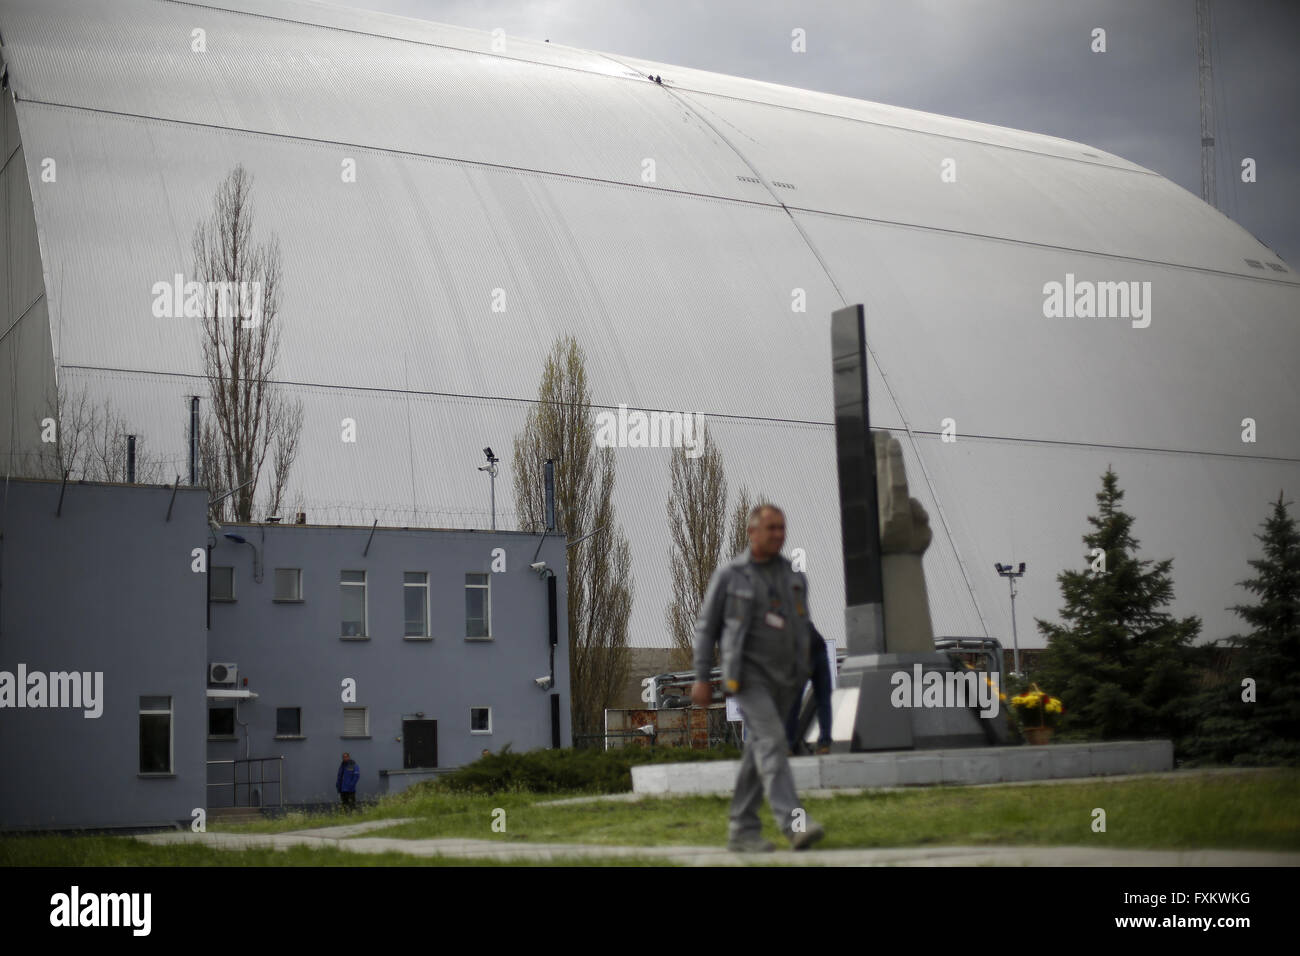 Aprile 16, 2016 - Lavoratore passeggiate passato Chernobyl nuovo confinamento sicuro struttura (NSC) in costruzione, un arco che riguarderà la costruzione del reattore numero 4 una volta posto su Chernobyl centrale nucleare, il 16 aprile 2016. Il nuovo confinamento sicuro struttura è assemblata in due metà ciascuna delle quali comprendente diversi tratti arcuati. Gli ucraini mark 30 anni poiché il mondo peggiore disastro nucleare di Chernobyl pant nucleare in Ucraina. L'esplosione durante i test al reattore numero 4 della centrale di Cernobyl nelle prime ore del 26 aprile 1986 inviata ricadute radioattive in th Foto Stock